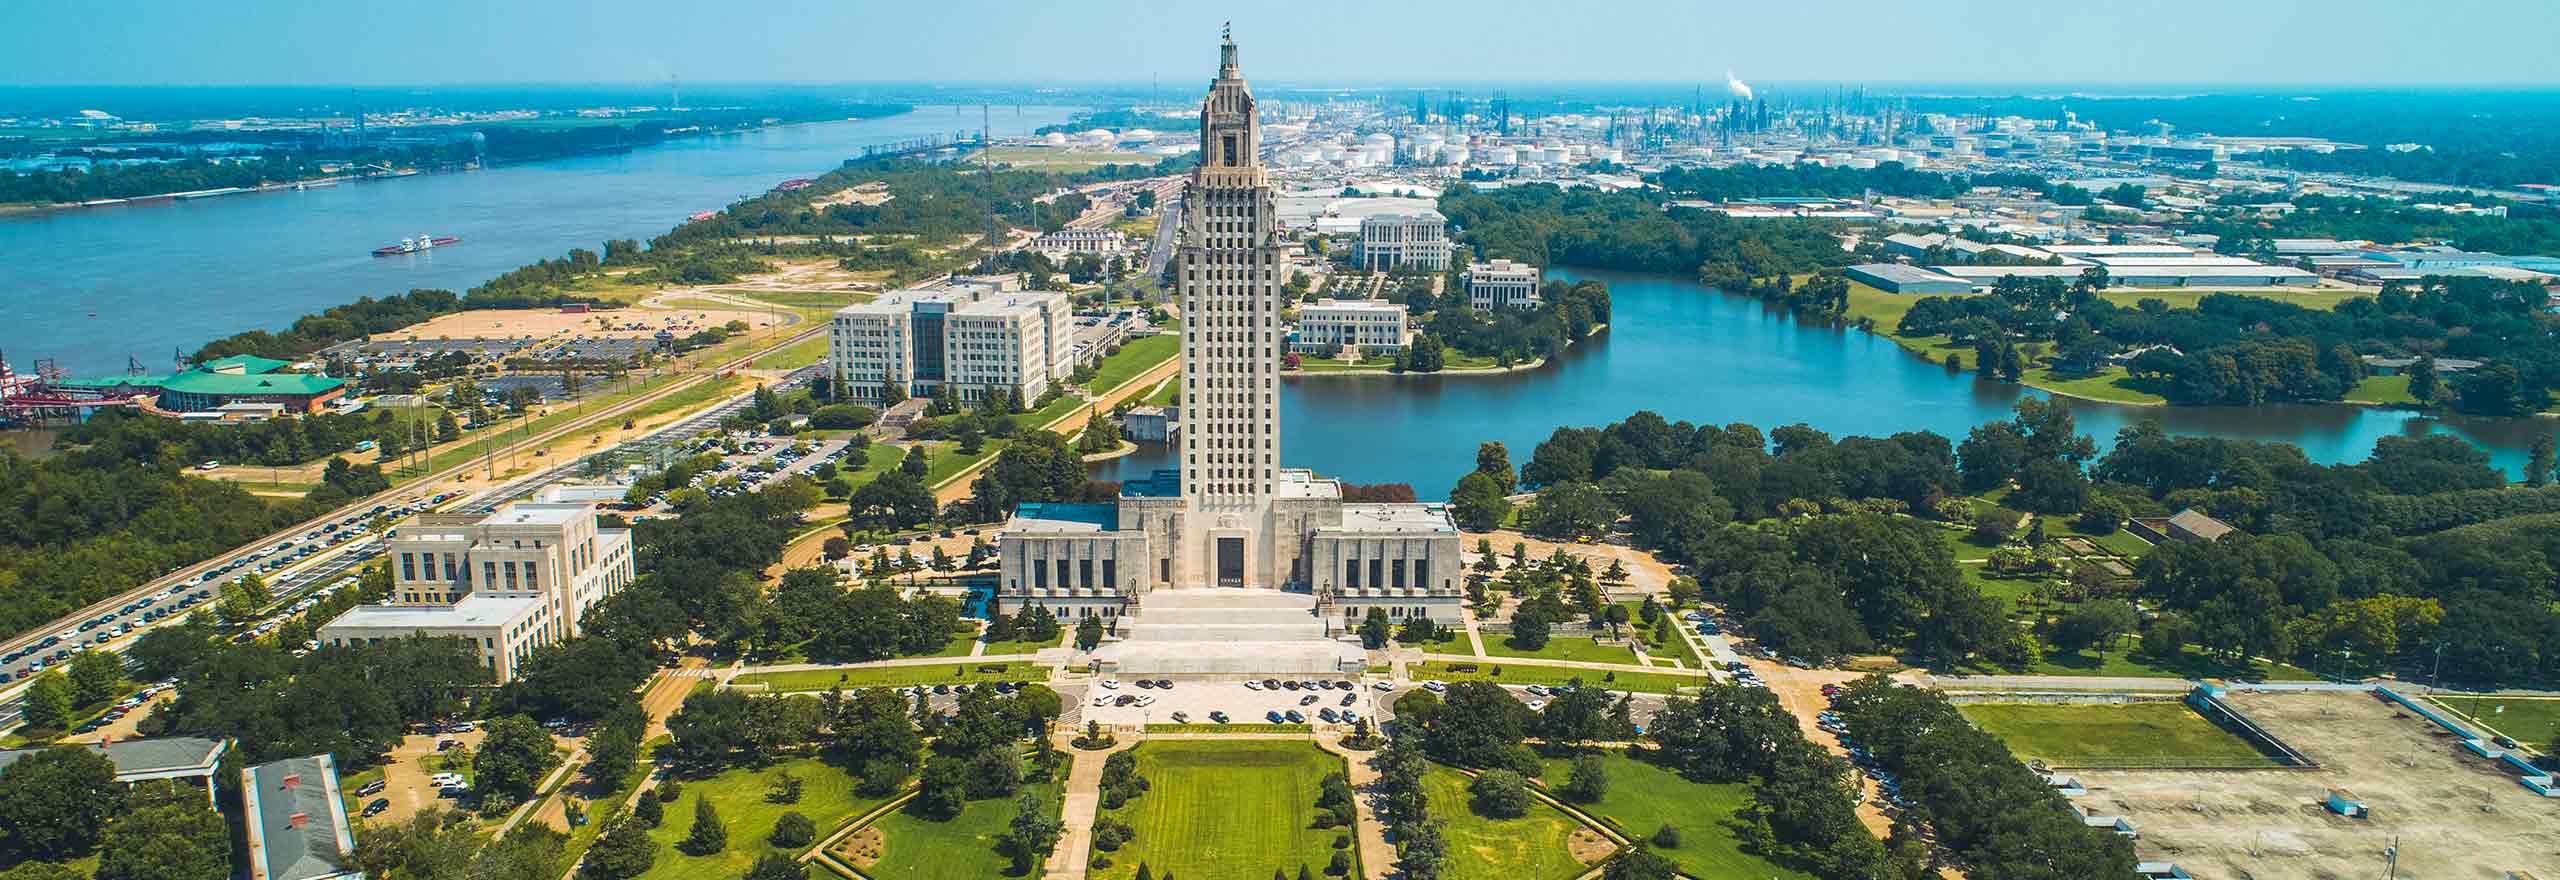 Foto aerea realizzata con un drone dello State Capitol Park di Baton Rouge in Louisiana